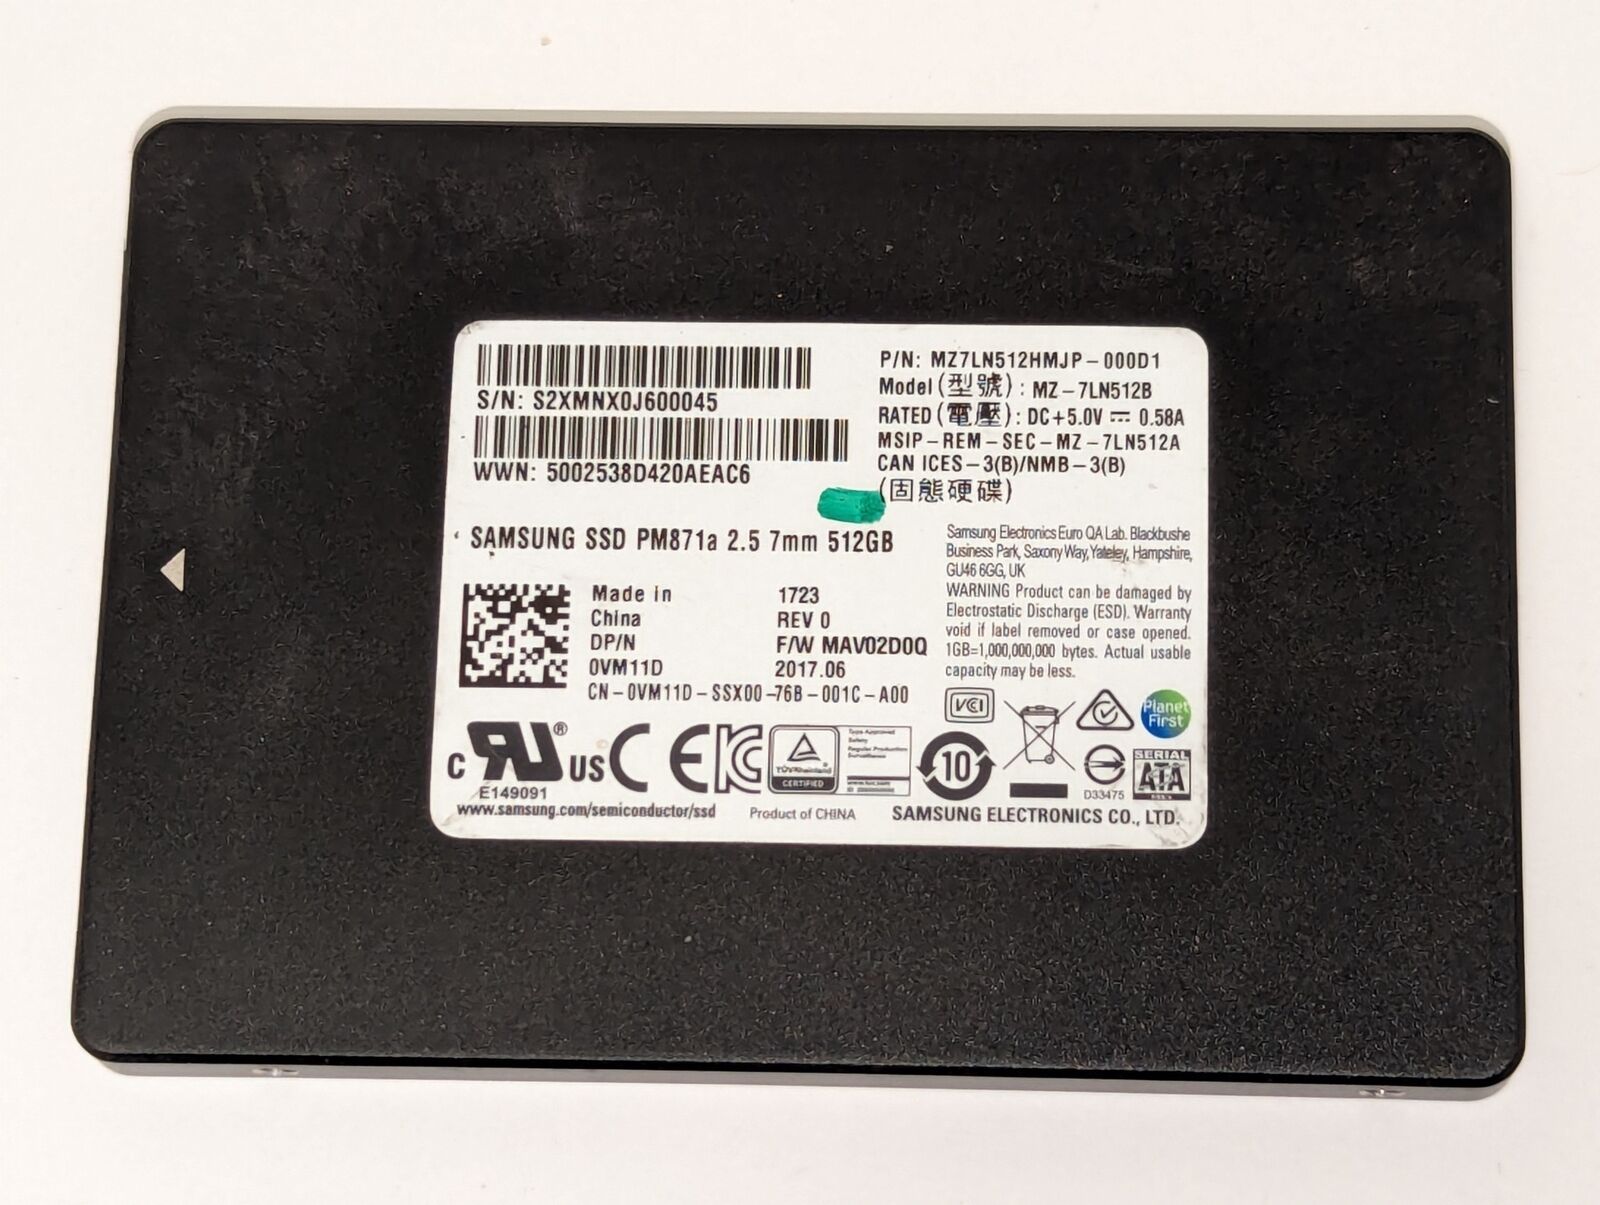 Samsung SSD PM871a 7mm 512GB 2.5 Solid State Drive MZ7LN512HMJP-000D1 MZ-7LN512B